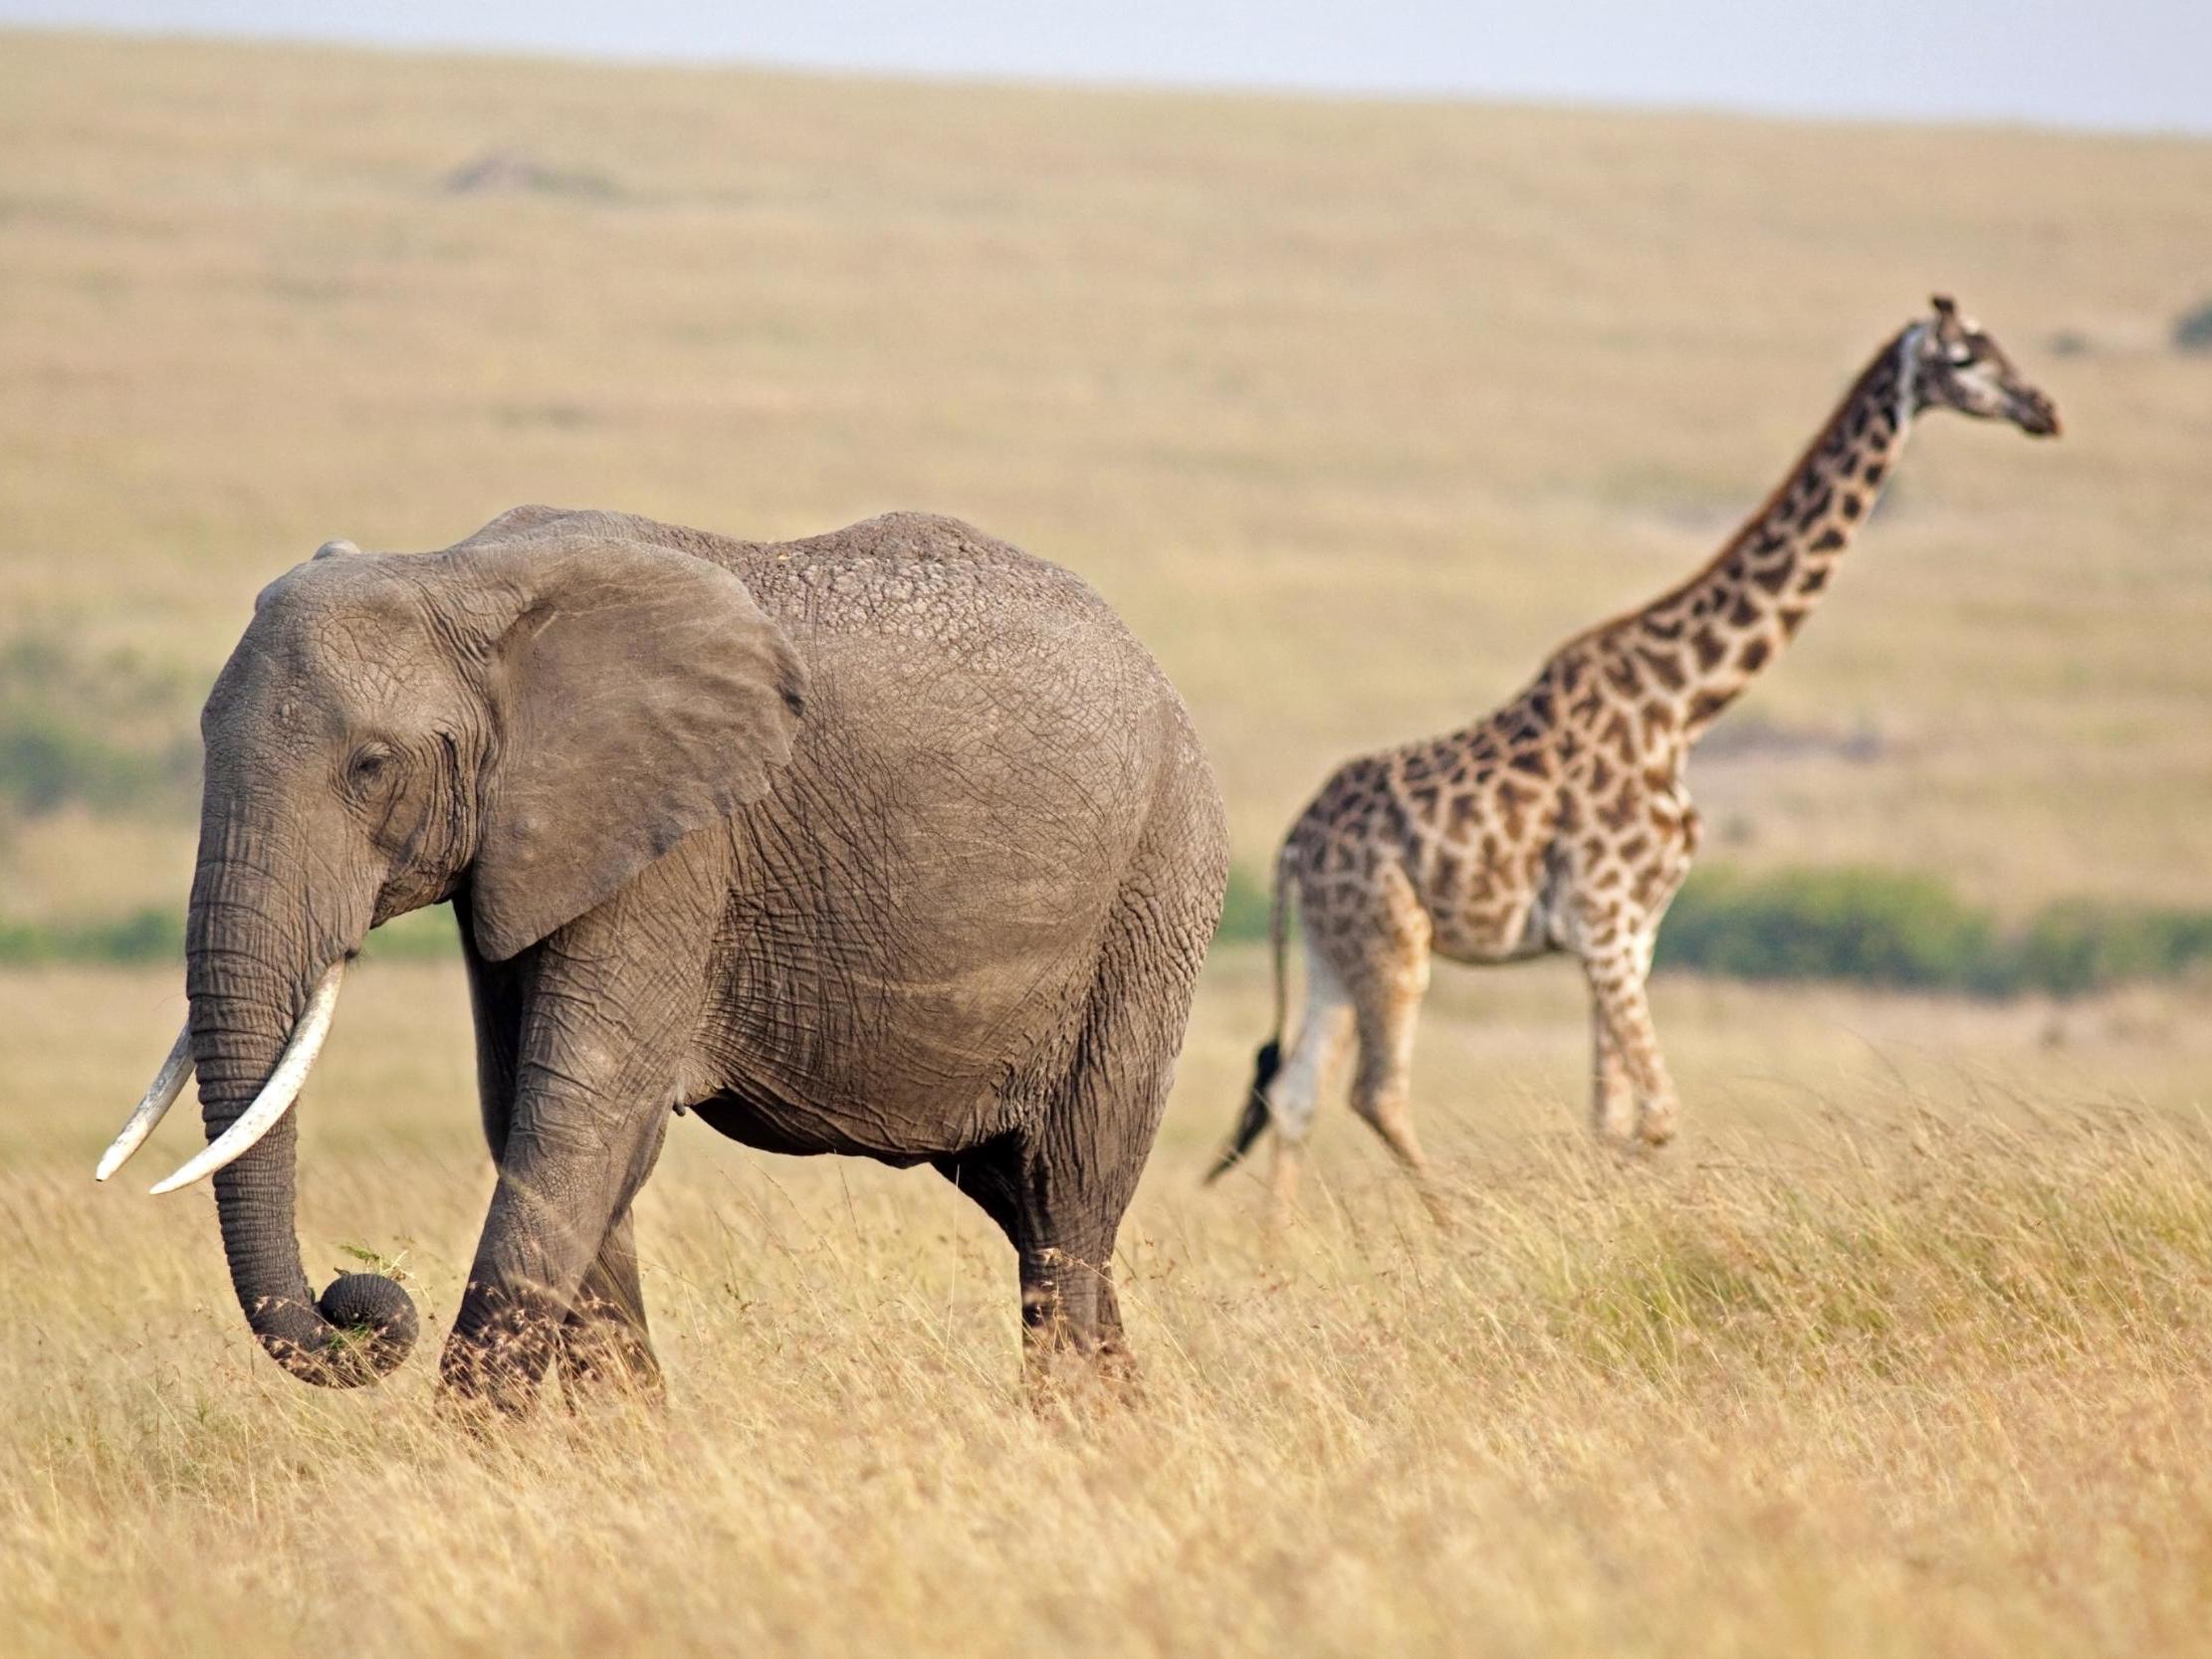 Resultado de imagen para elephant and giraffe